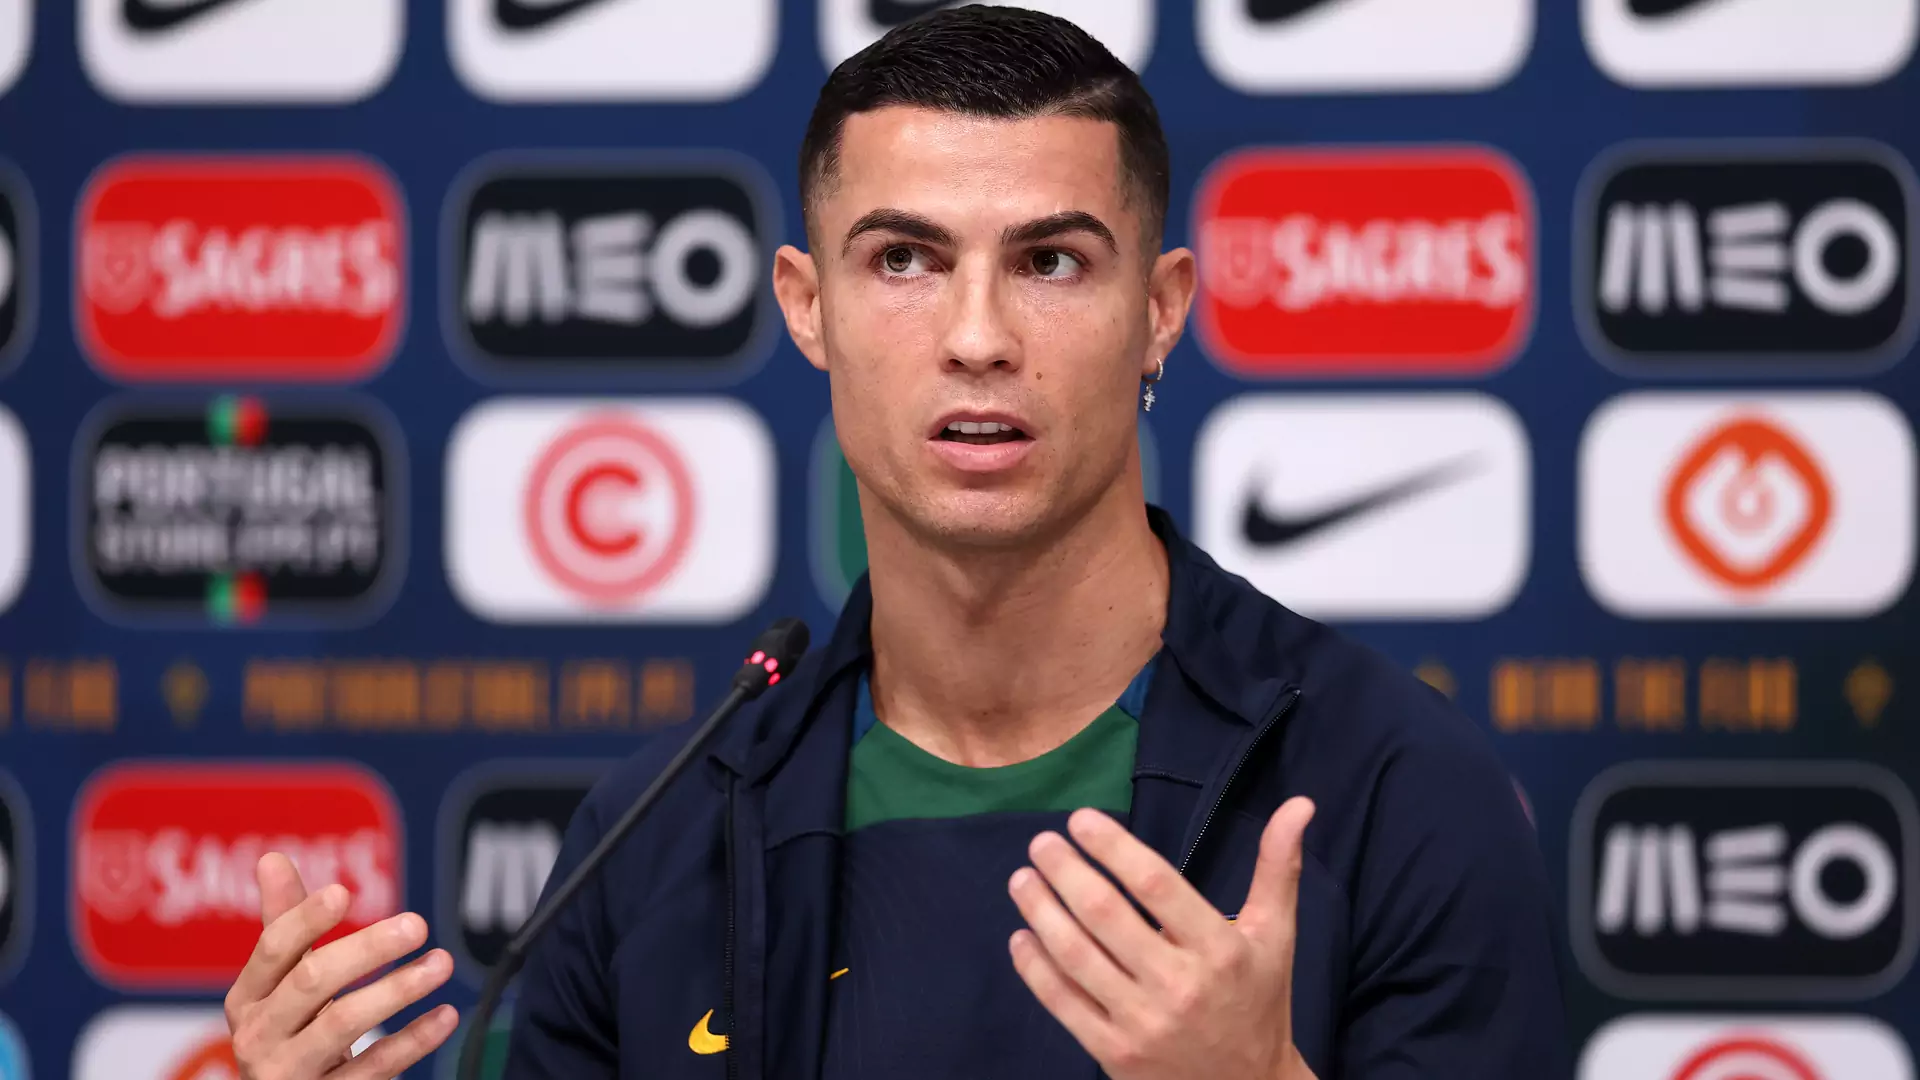 Cristiano Ronaldo z nowym rekordem. Nie dotyczy piłki, ale Instagrama